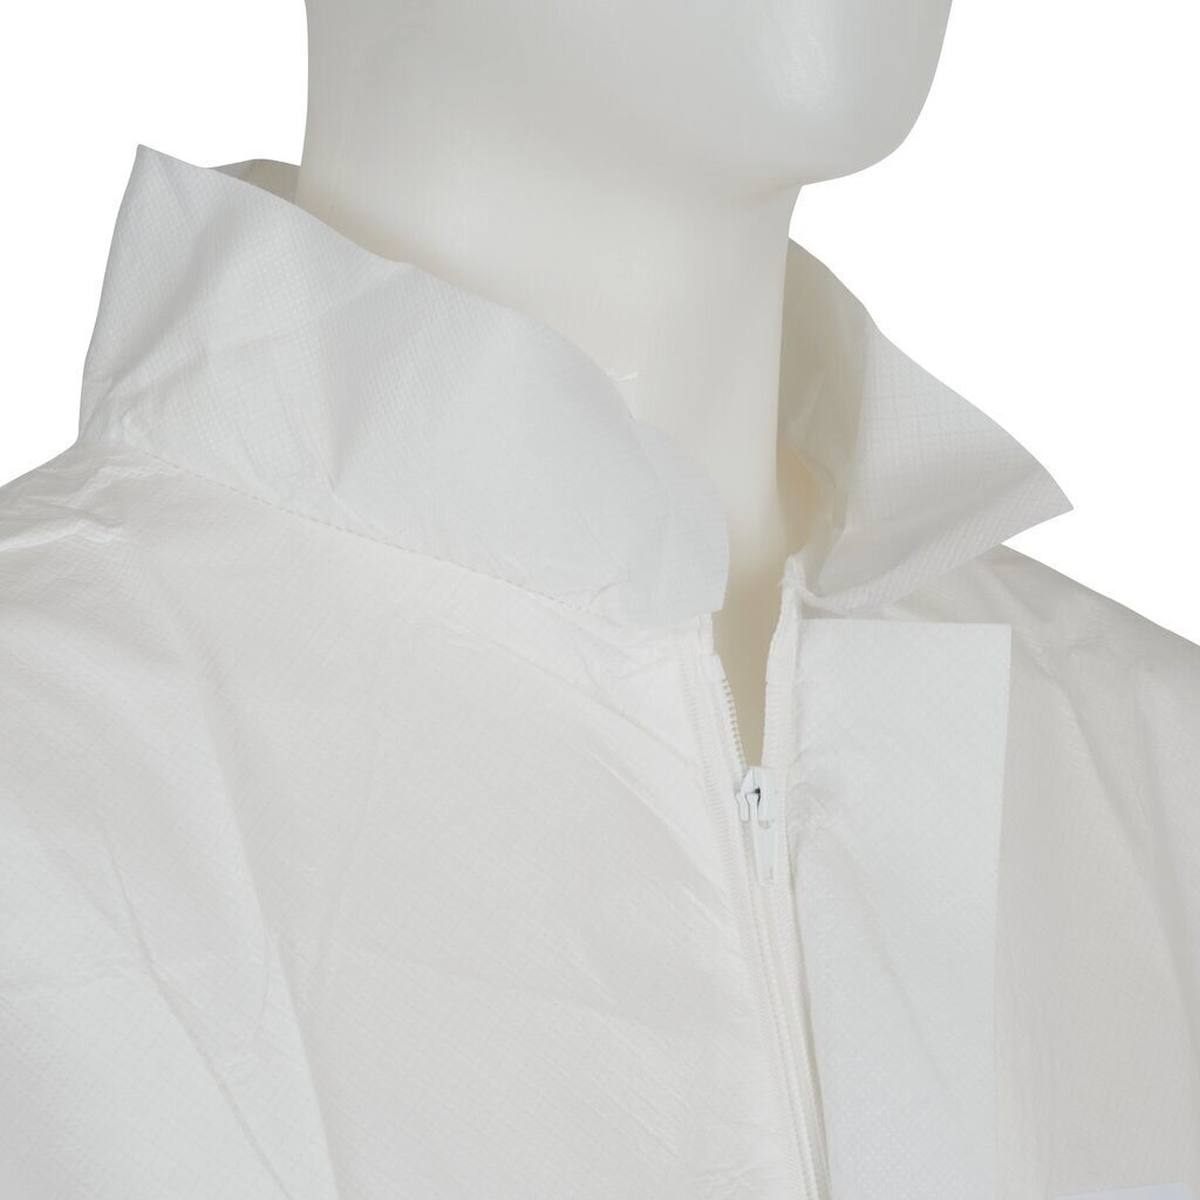 cappotto 3M 4440, bianco, taglia XL, particolarmente traspirante, molto leggero, con zip, polsini in maglia